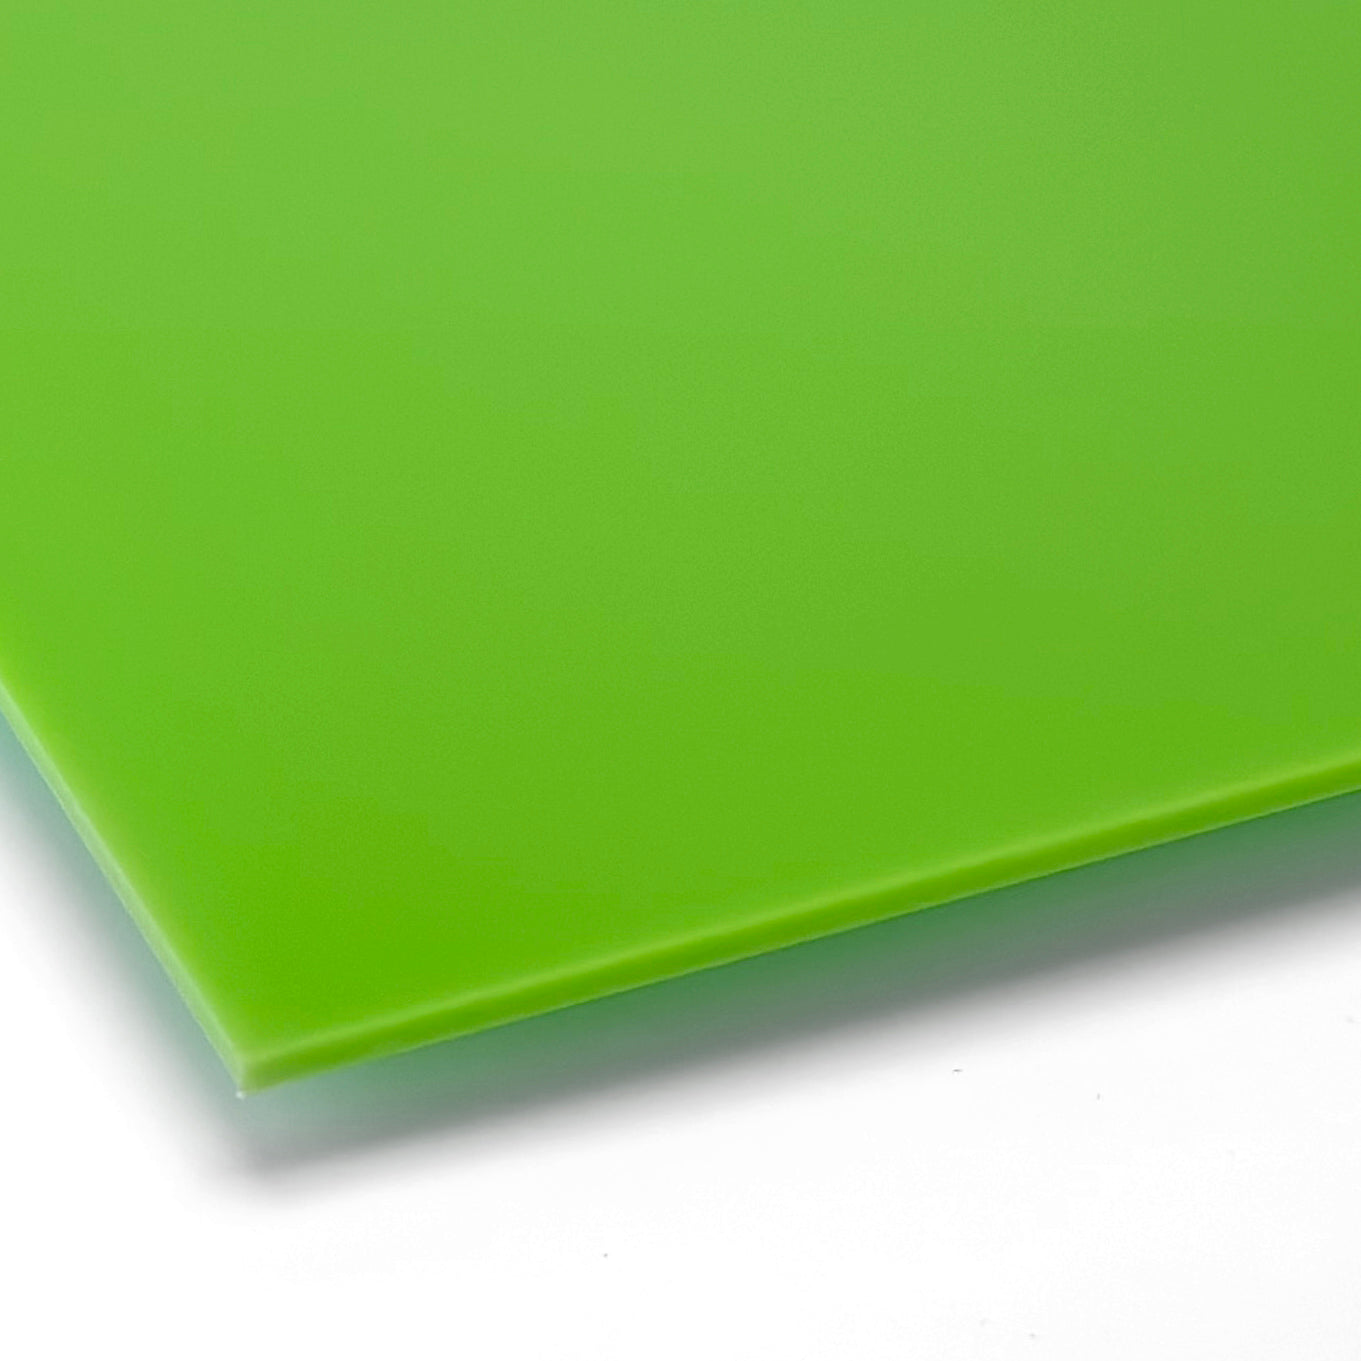 Akryyli, limen vihreä, laserleikkuulla ja painatuksella - 300x200mm